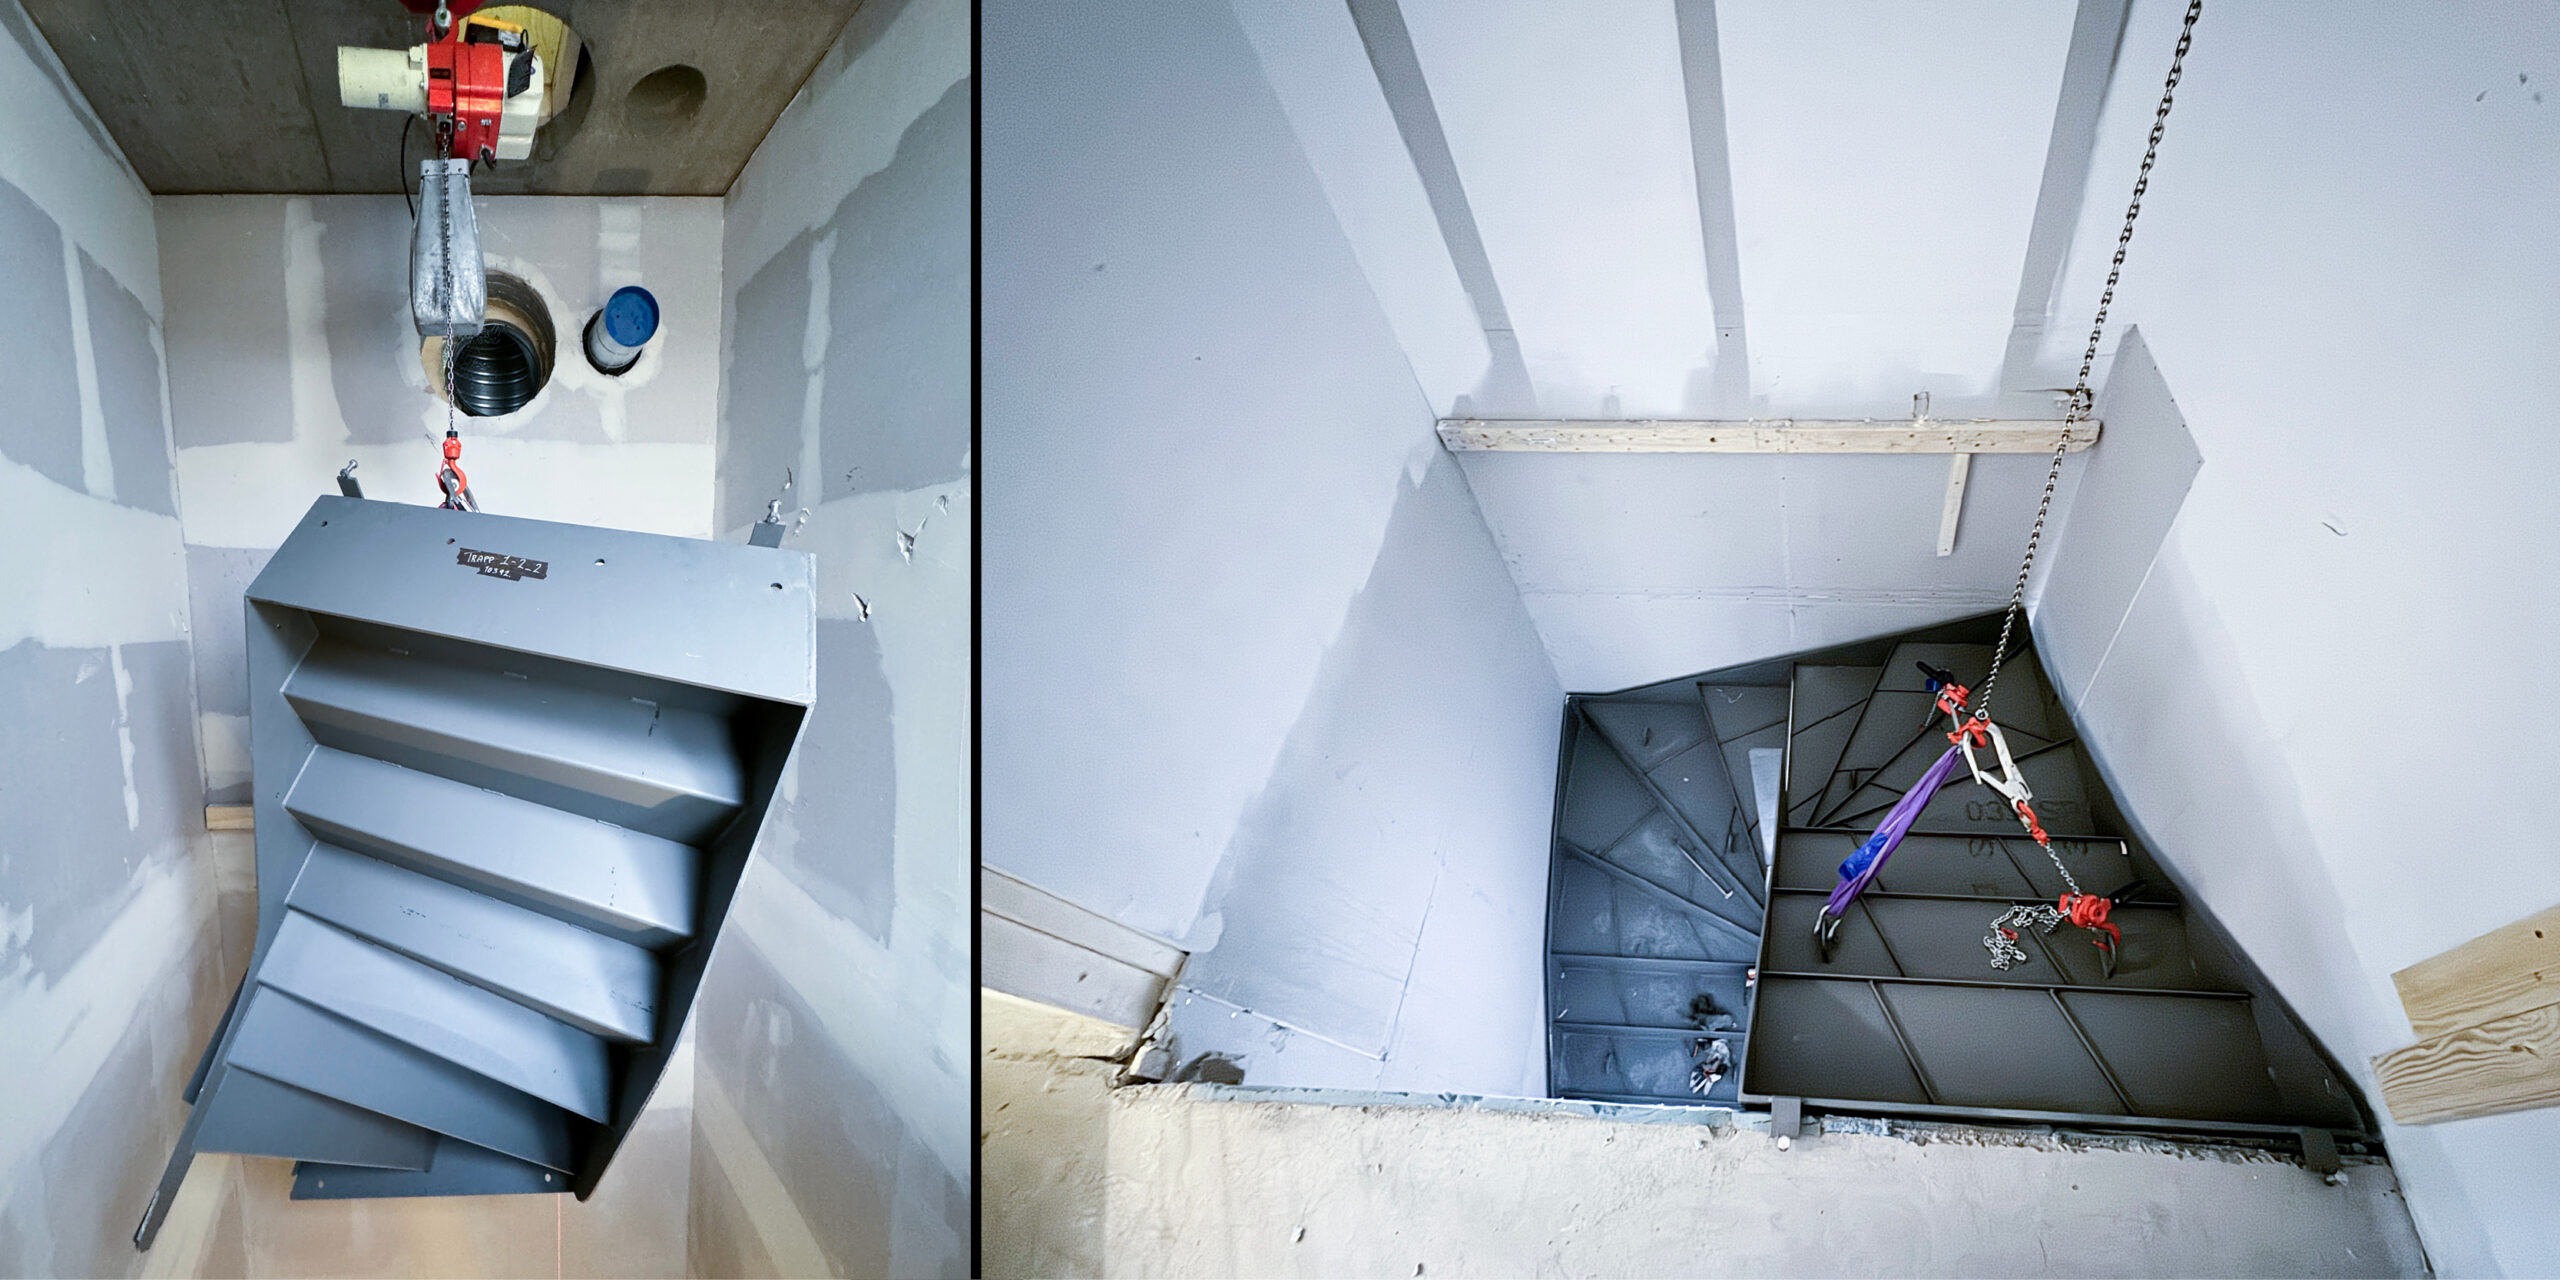 Hvert trappeelement senkes ned 27 meter fra taket og monteres nedenifra og oppover.